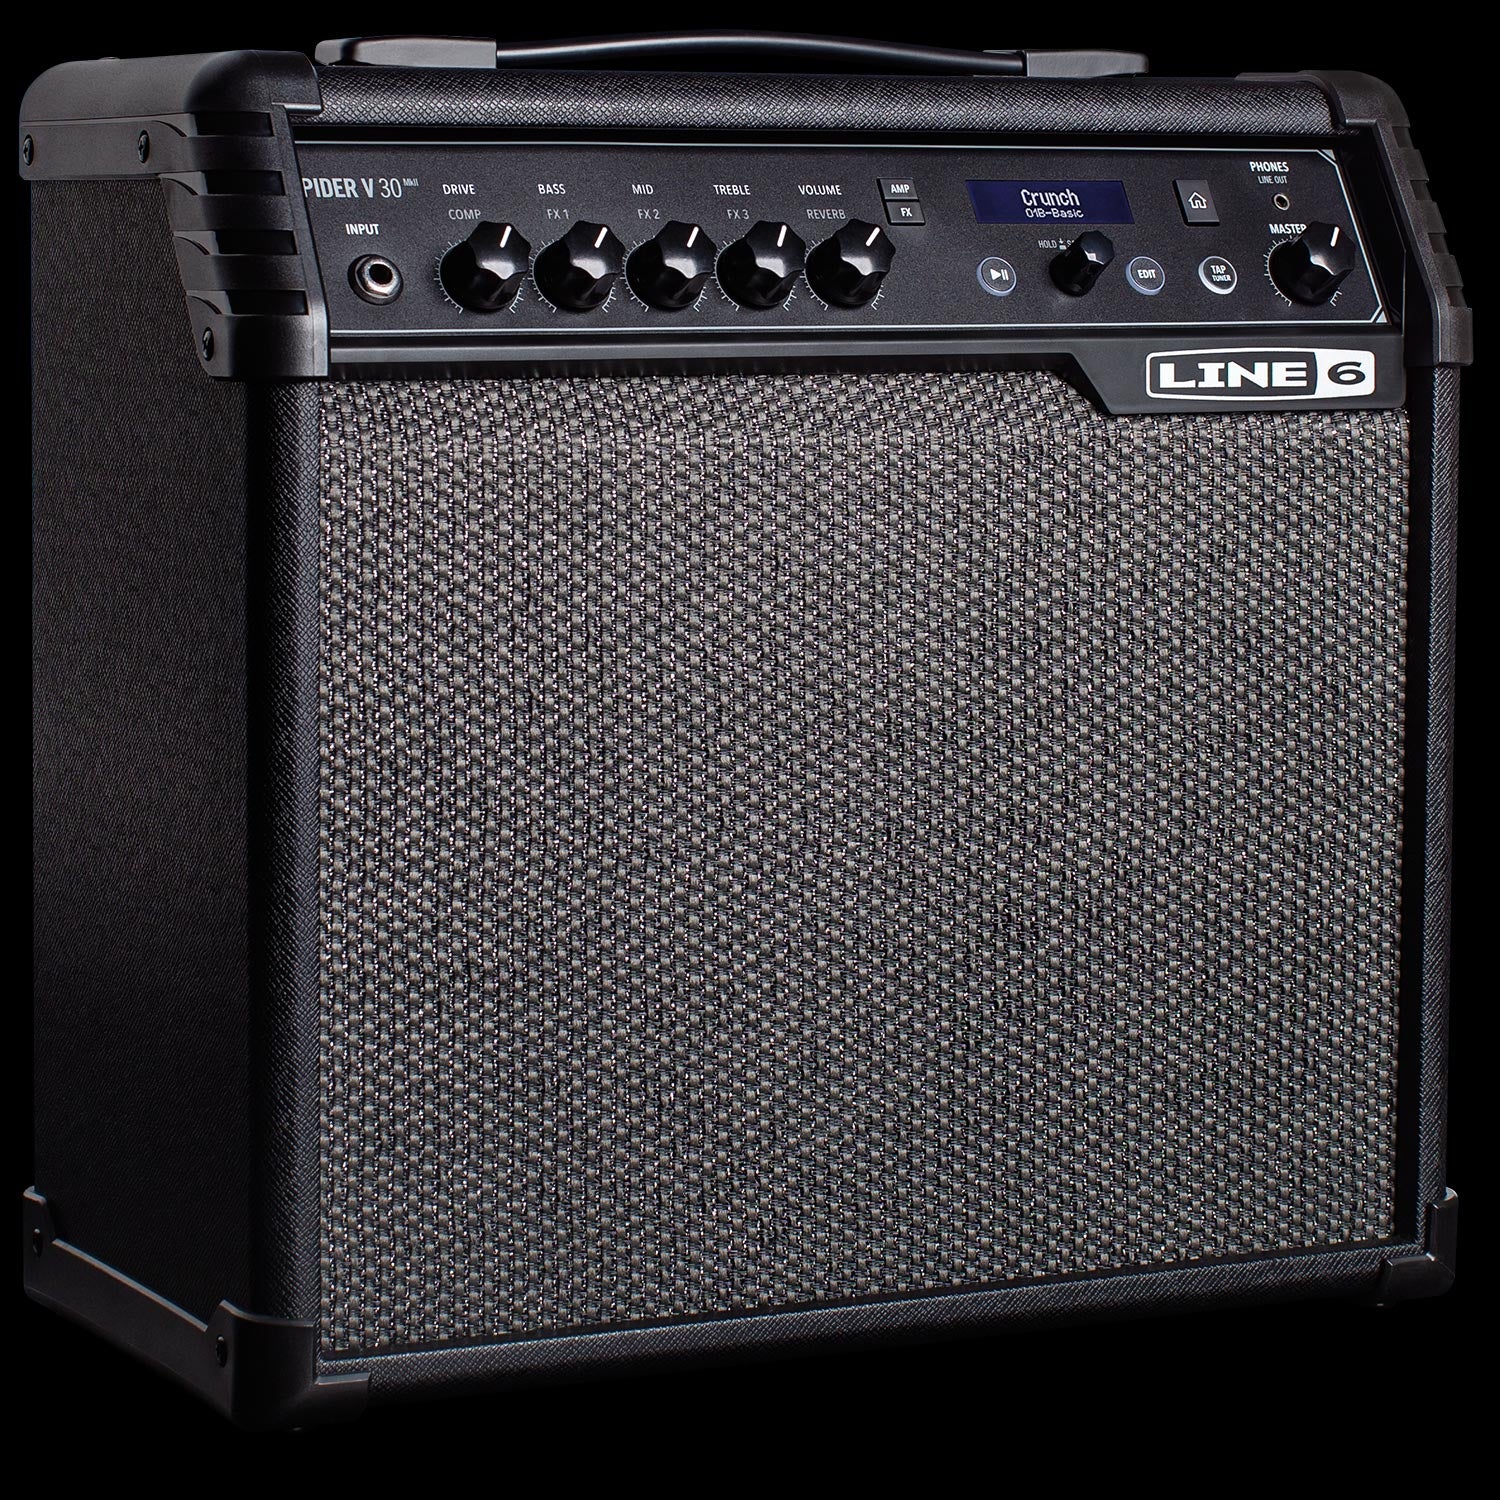 Line 6 Spider V30 MKII Modeling Combo Guitar Amplifier 30 Watts 8" Speaker